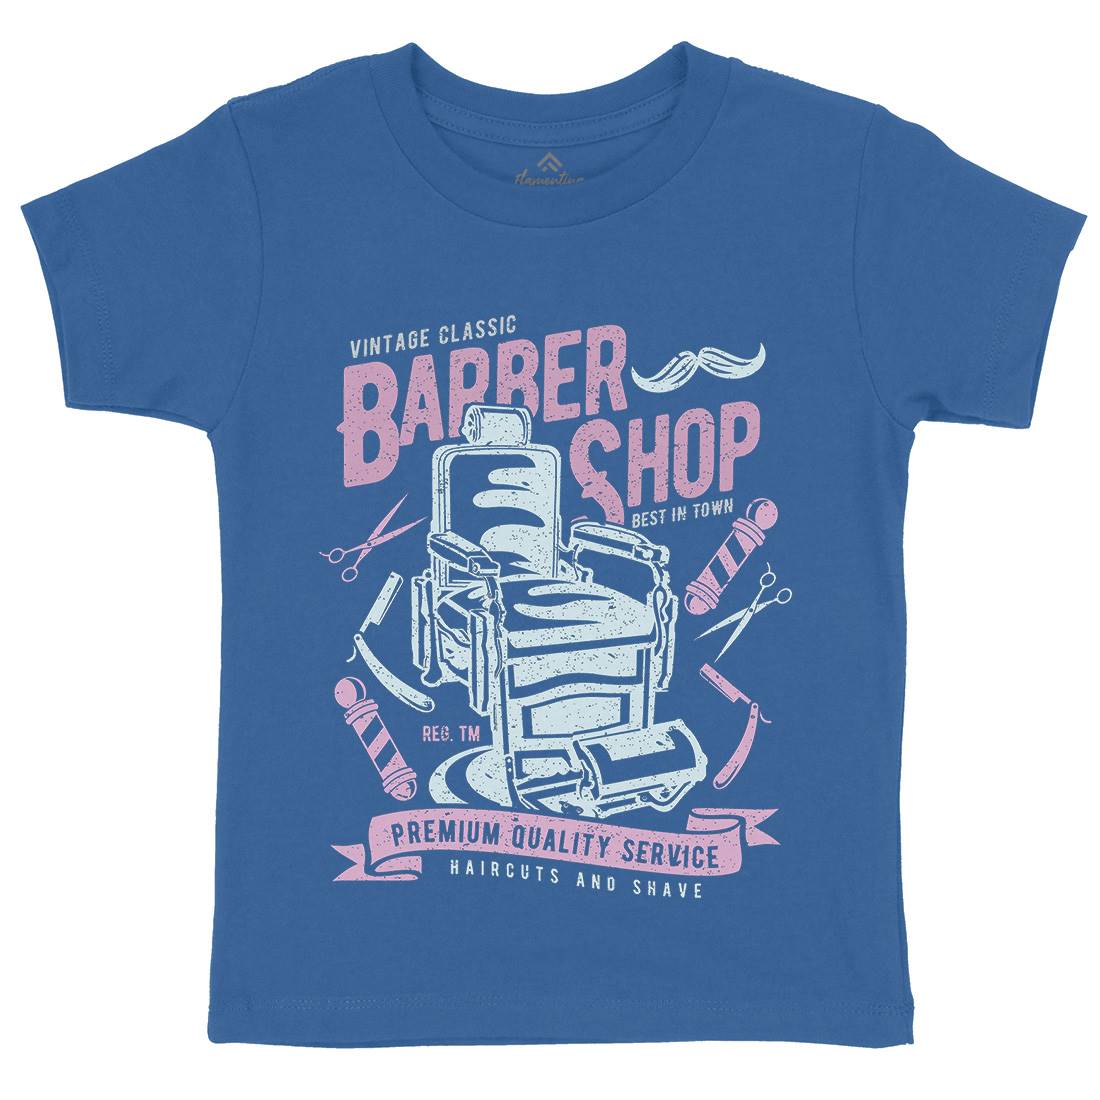 Vintage Shop Kids Crew Neck T-Shirt Barber A191